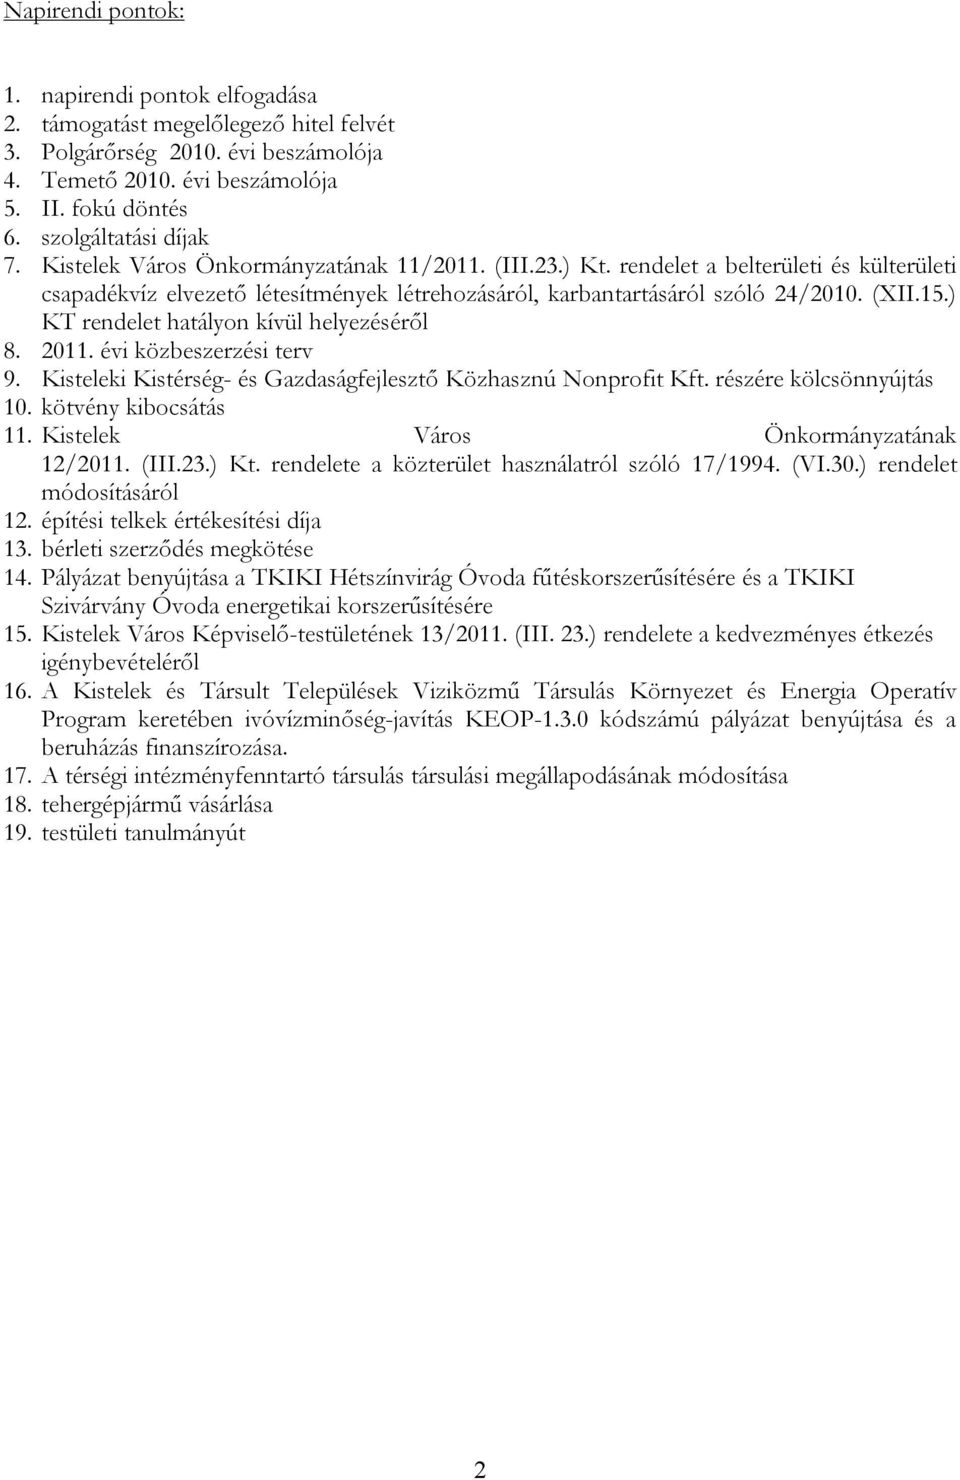 (XII.15.) KT rendelet hatályon kívül helyezéséről 8. 2011. évi közbeszerzési terv 9. Kisteleki Kistérség- és Gazdaságfejlesztő Közhasznú Nonprofit Kft. részére kölcsönnyújtás 10.